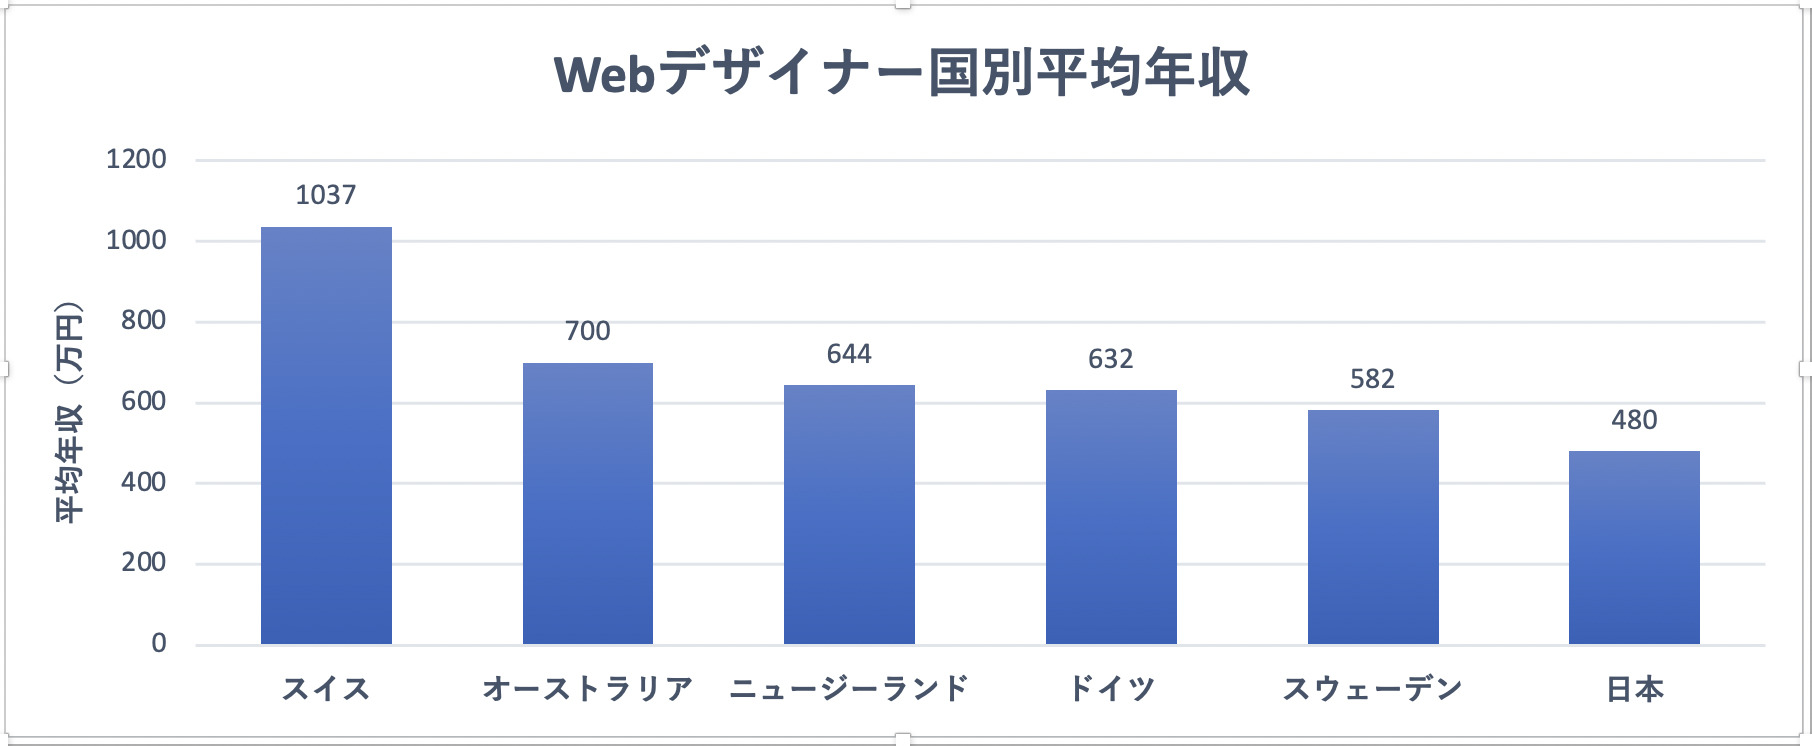 Webデザイナー国別平均年収